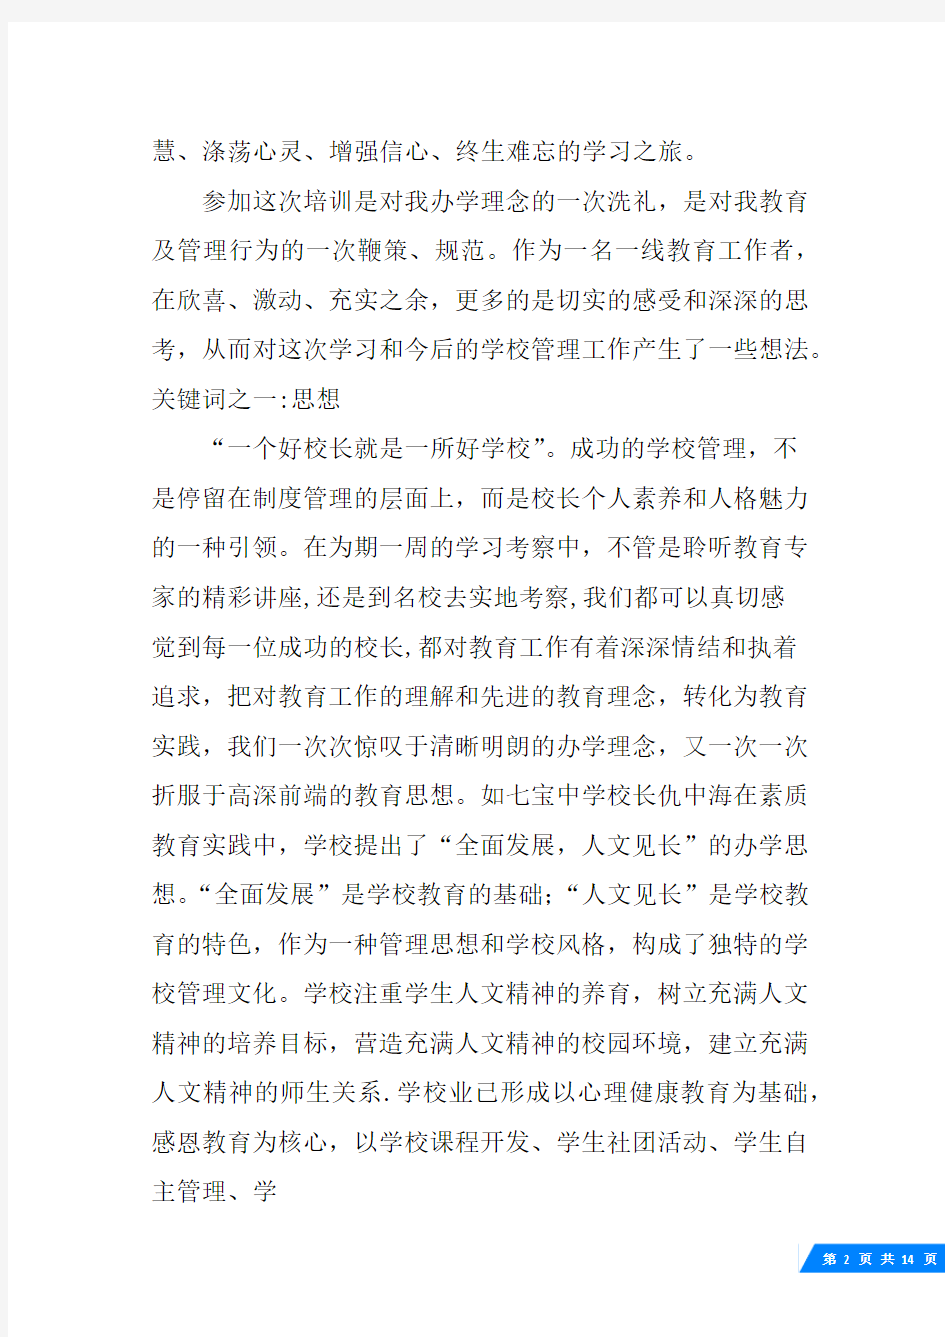 上海实验学校考察报告